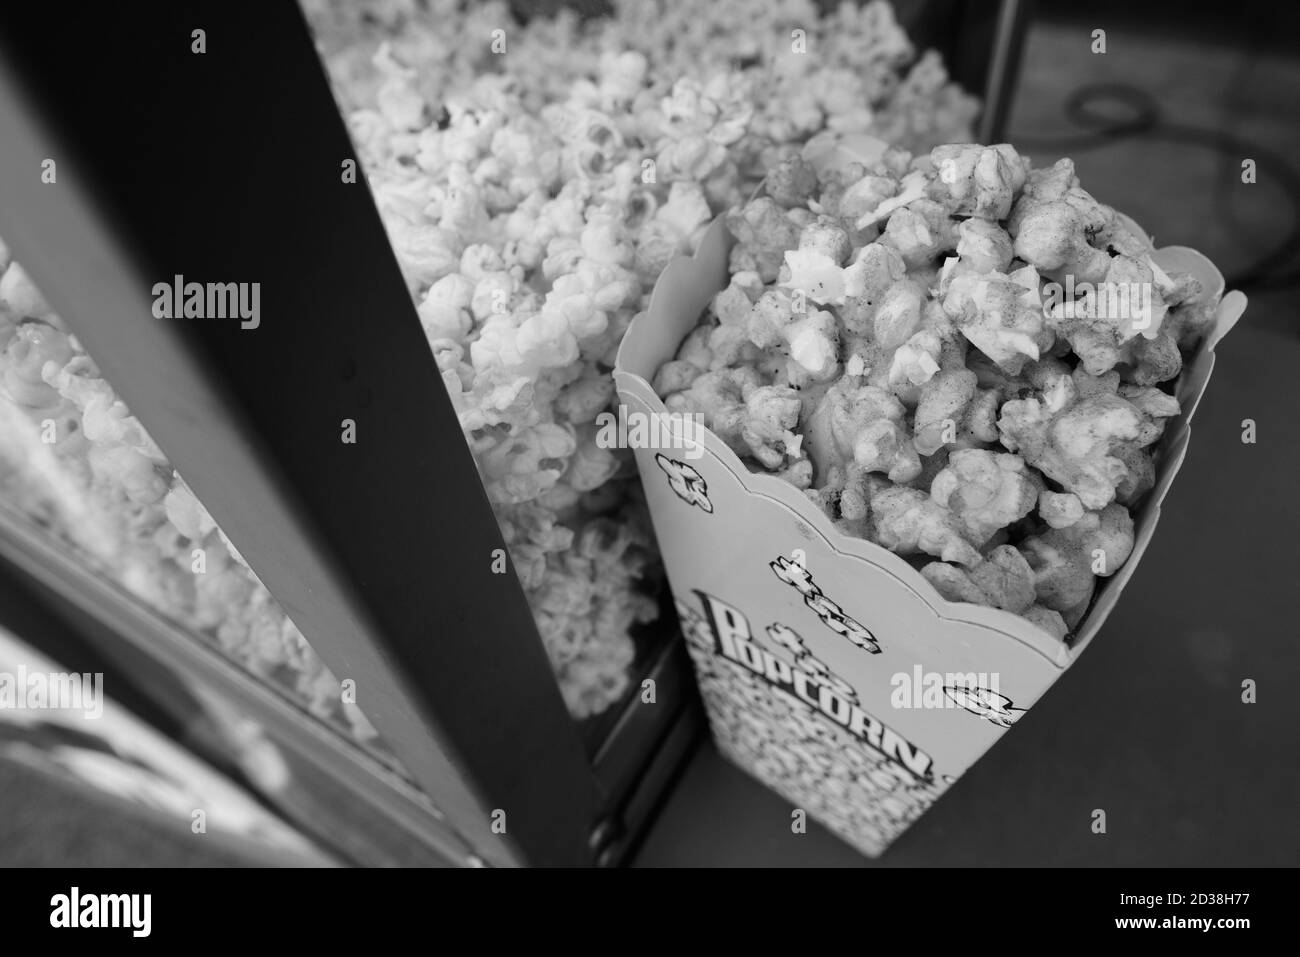 Köstliche Popcorn in Box auf Popcorn Stand platziert Stockfoto